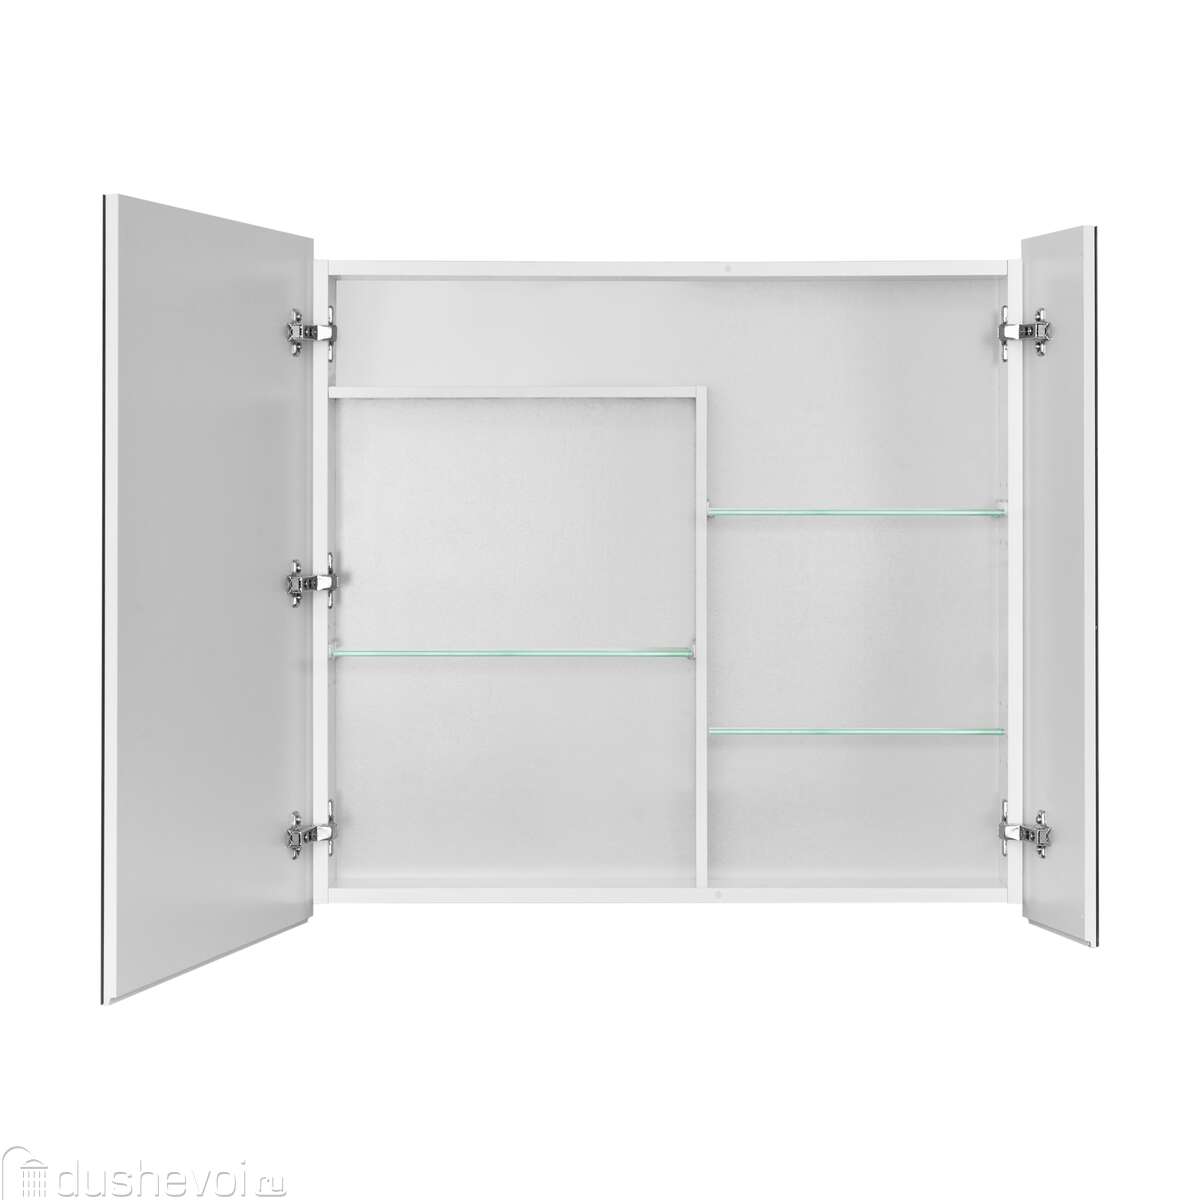 Зеркальный шкаф Акватон Лондри 80 см, белый, 1A267202LH010